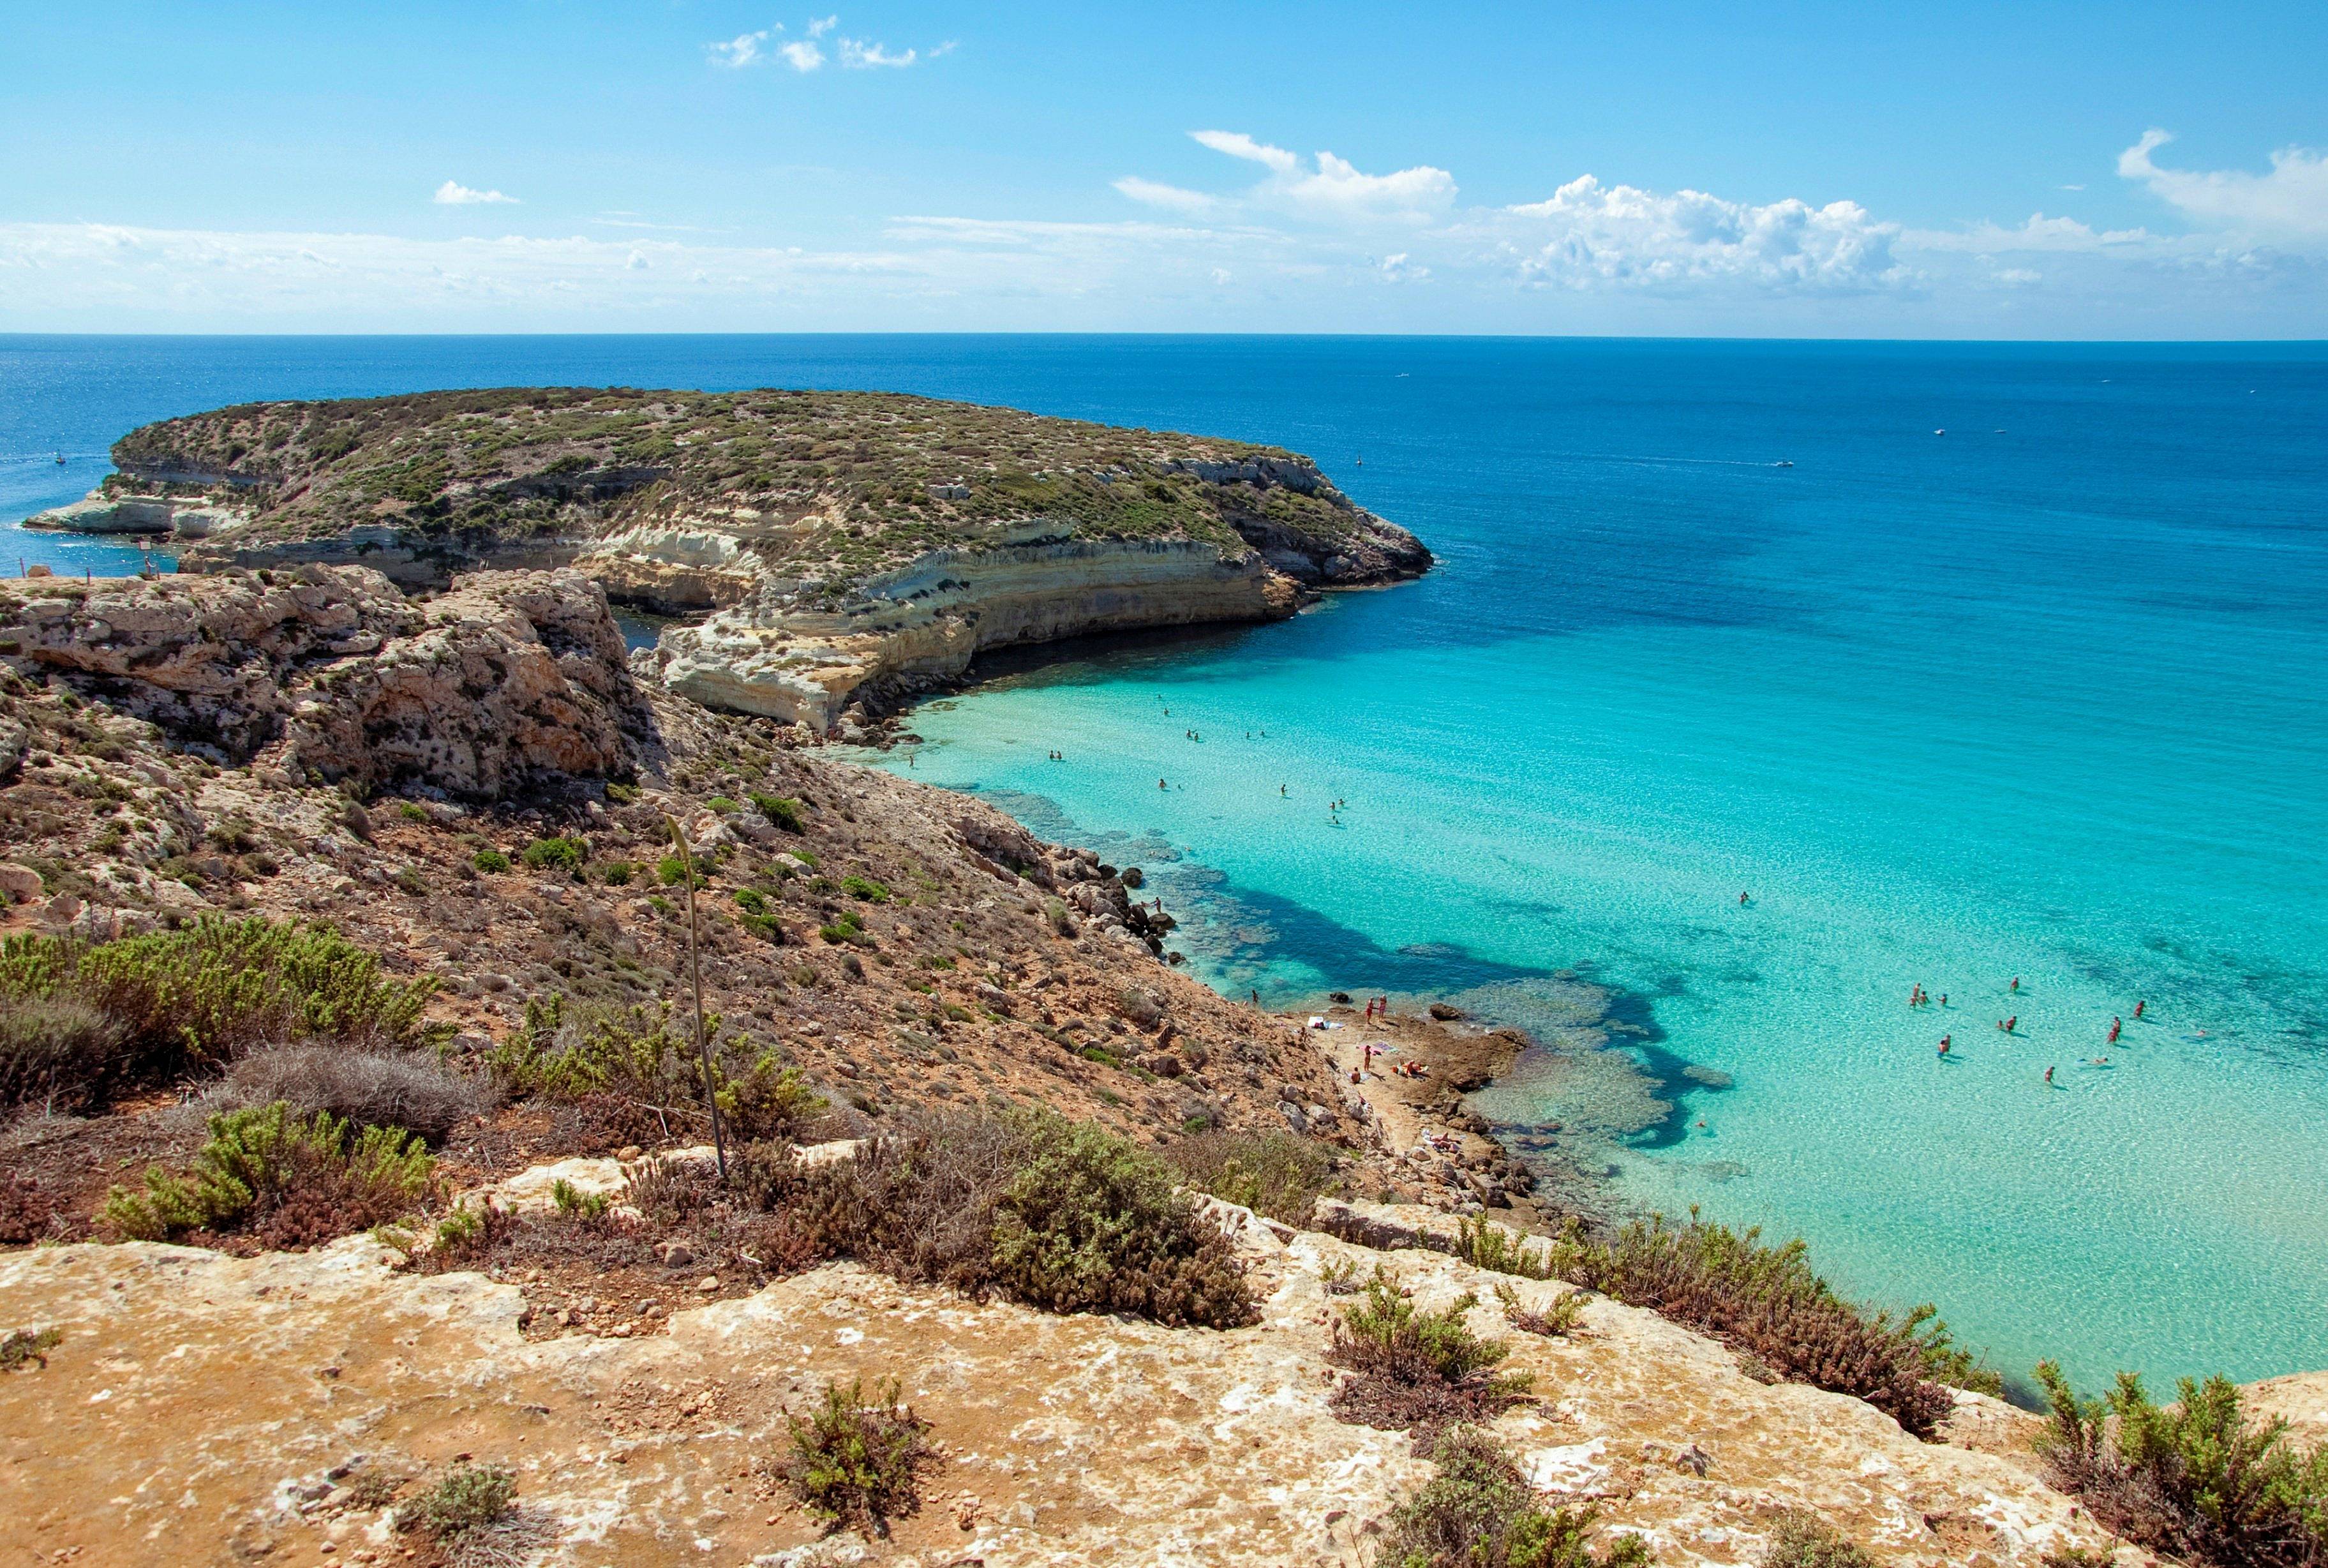 Mare, sole e relax nell'isola di Lampedusa